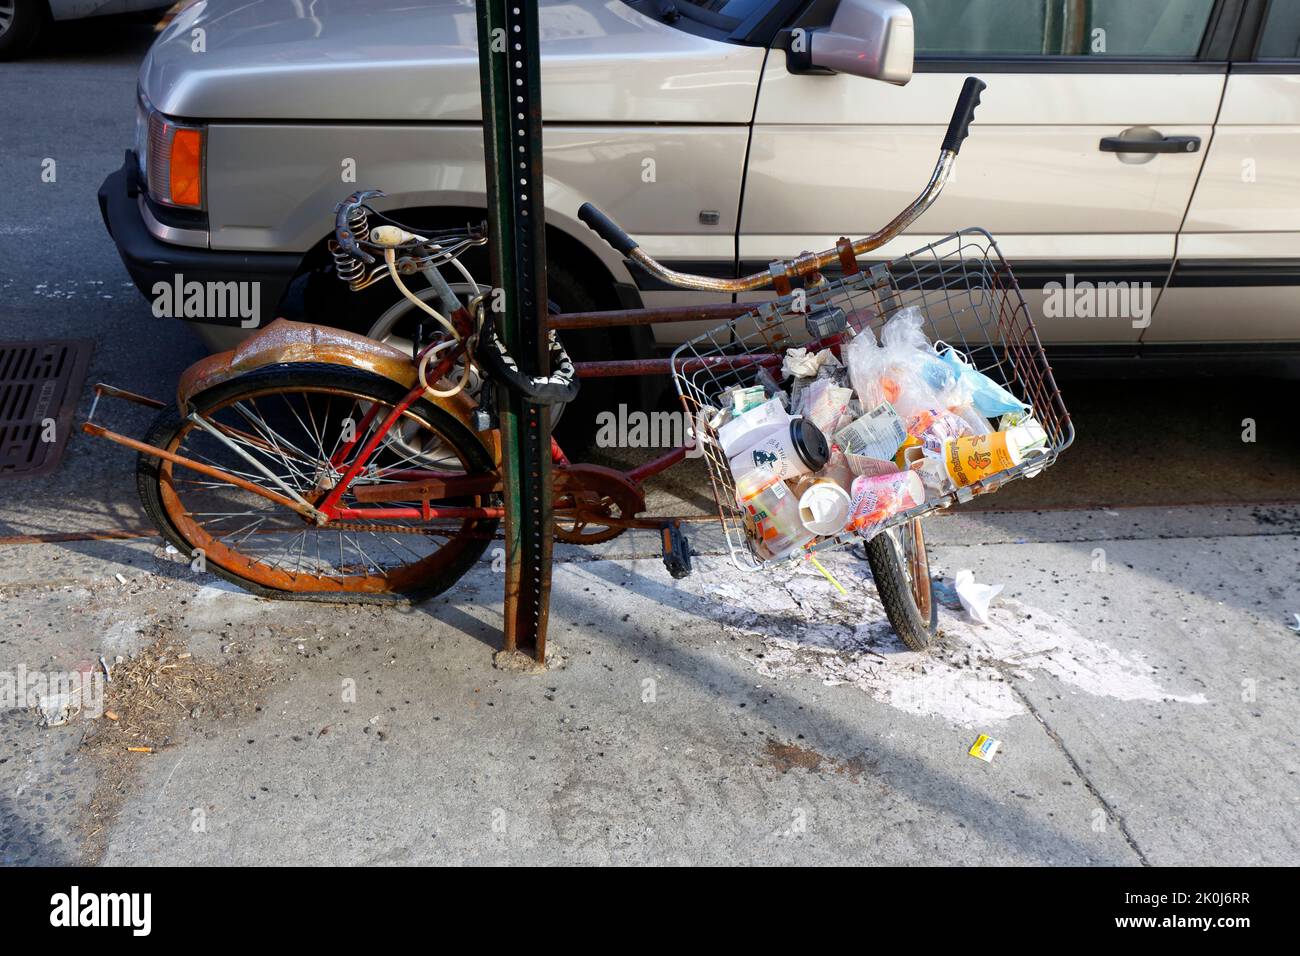 Spazzatura e lettiera nel cesto manubrio di una bicicletta arrugginita abbandonata incatenata ad un palo a New York City. Foto Stock